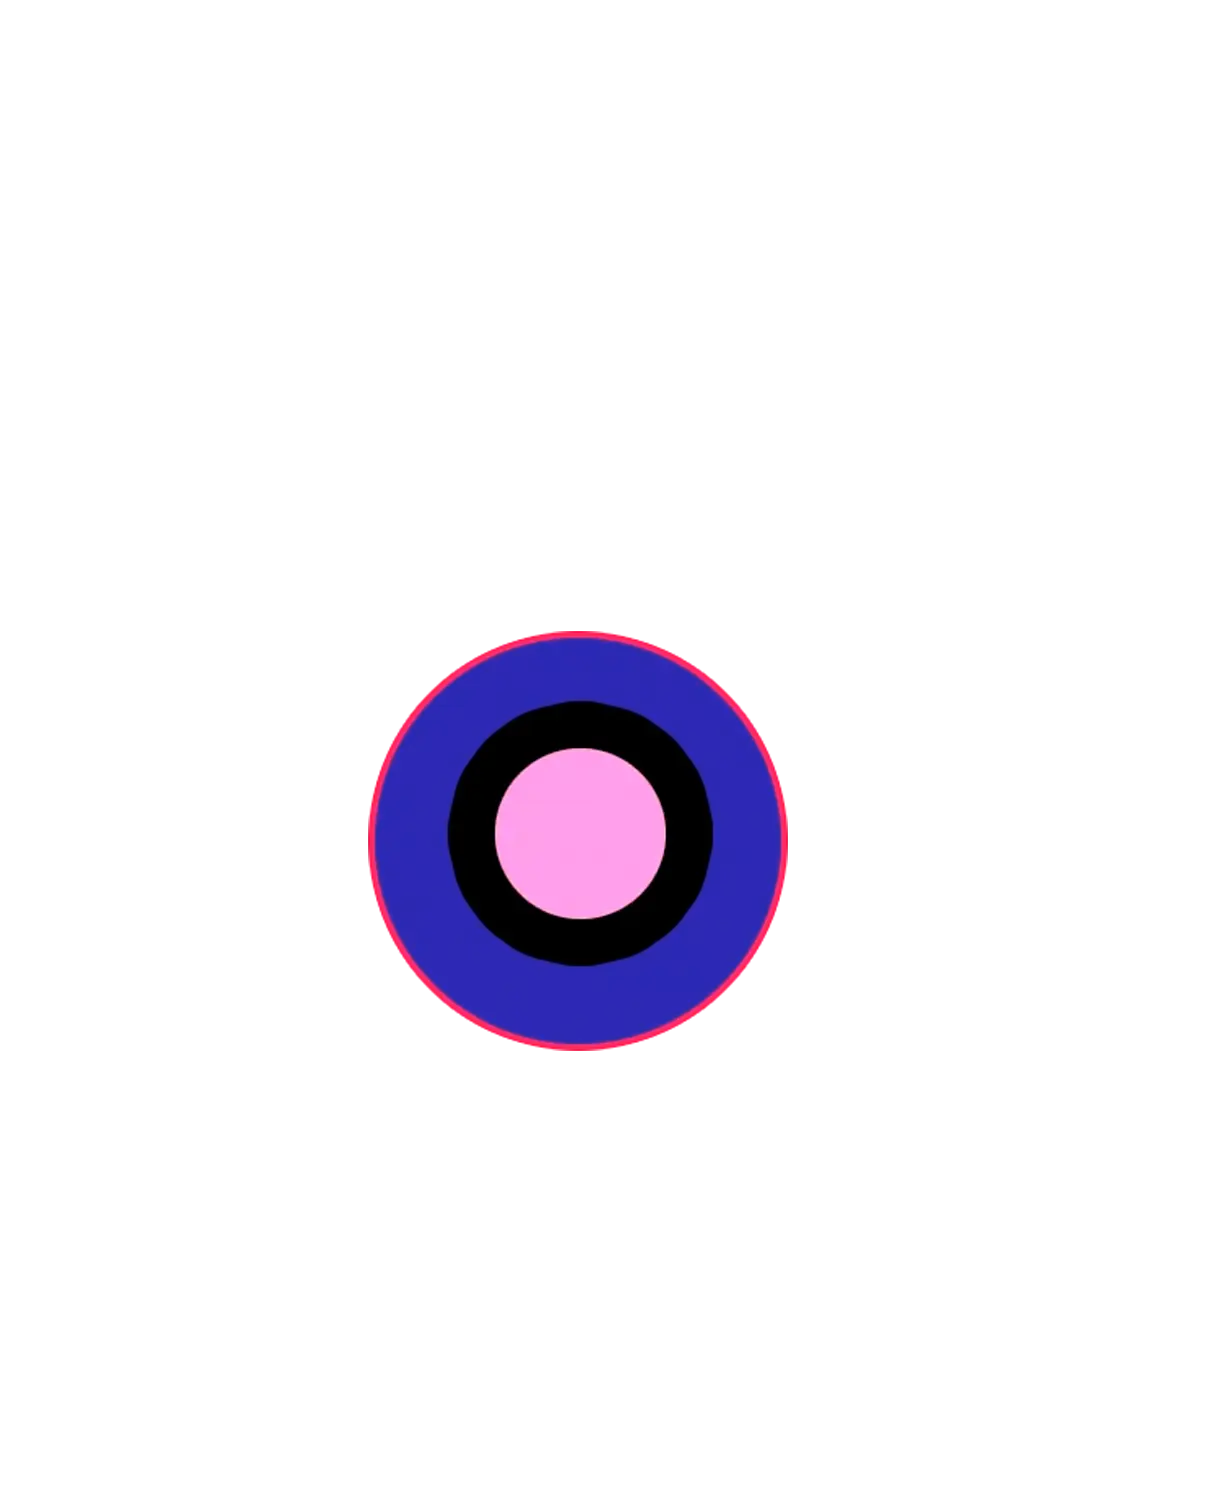 Imagen de un circulo azul y rosa